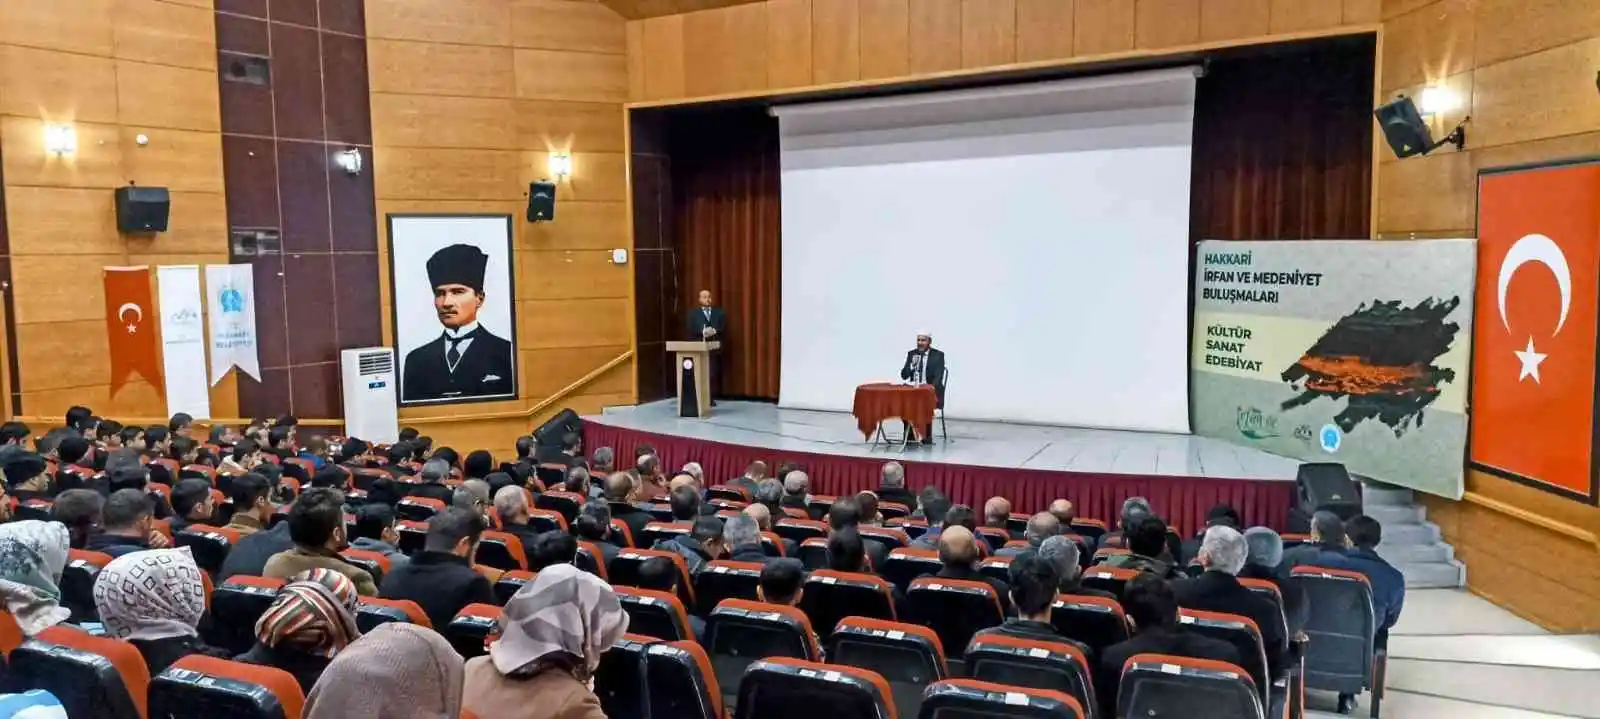 Yazar Turan: "4-6 yaş grubu Kur'an kursları çok önemli bir projedir"
